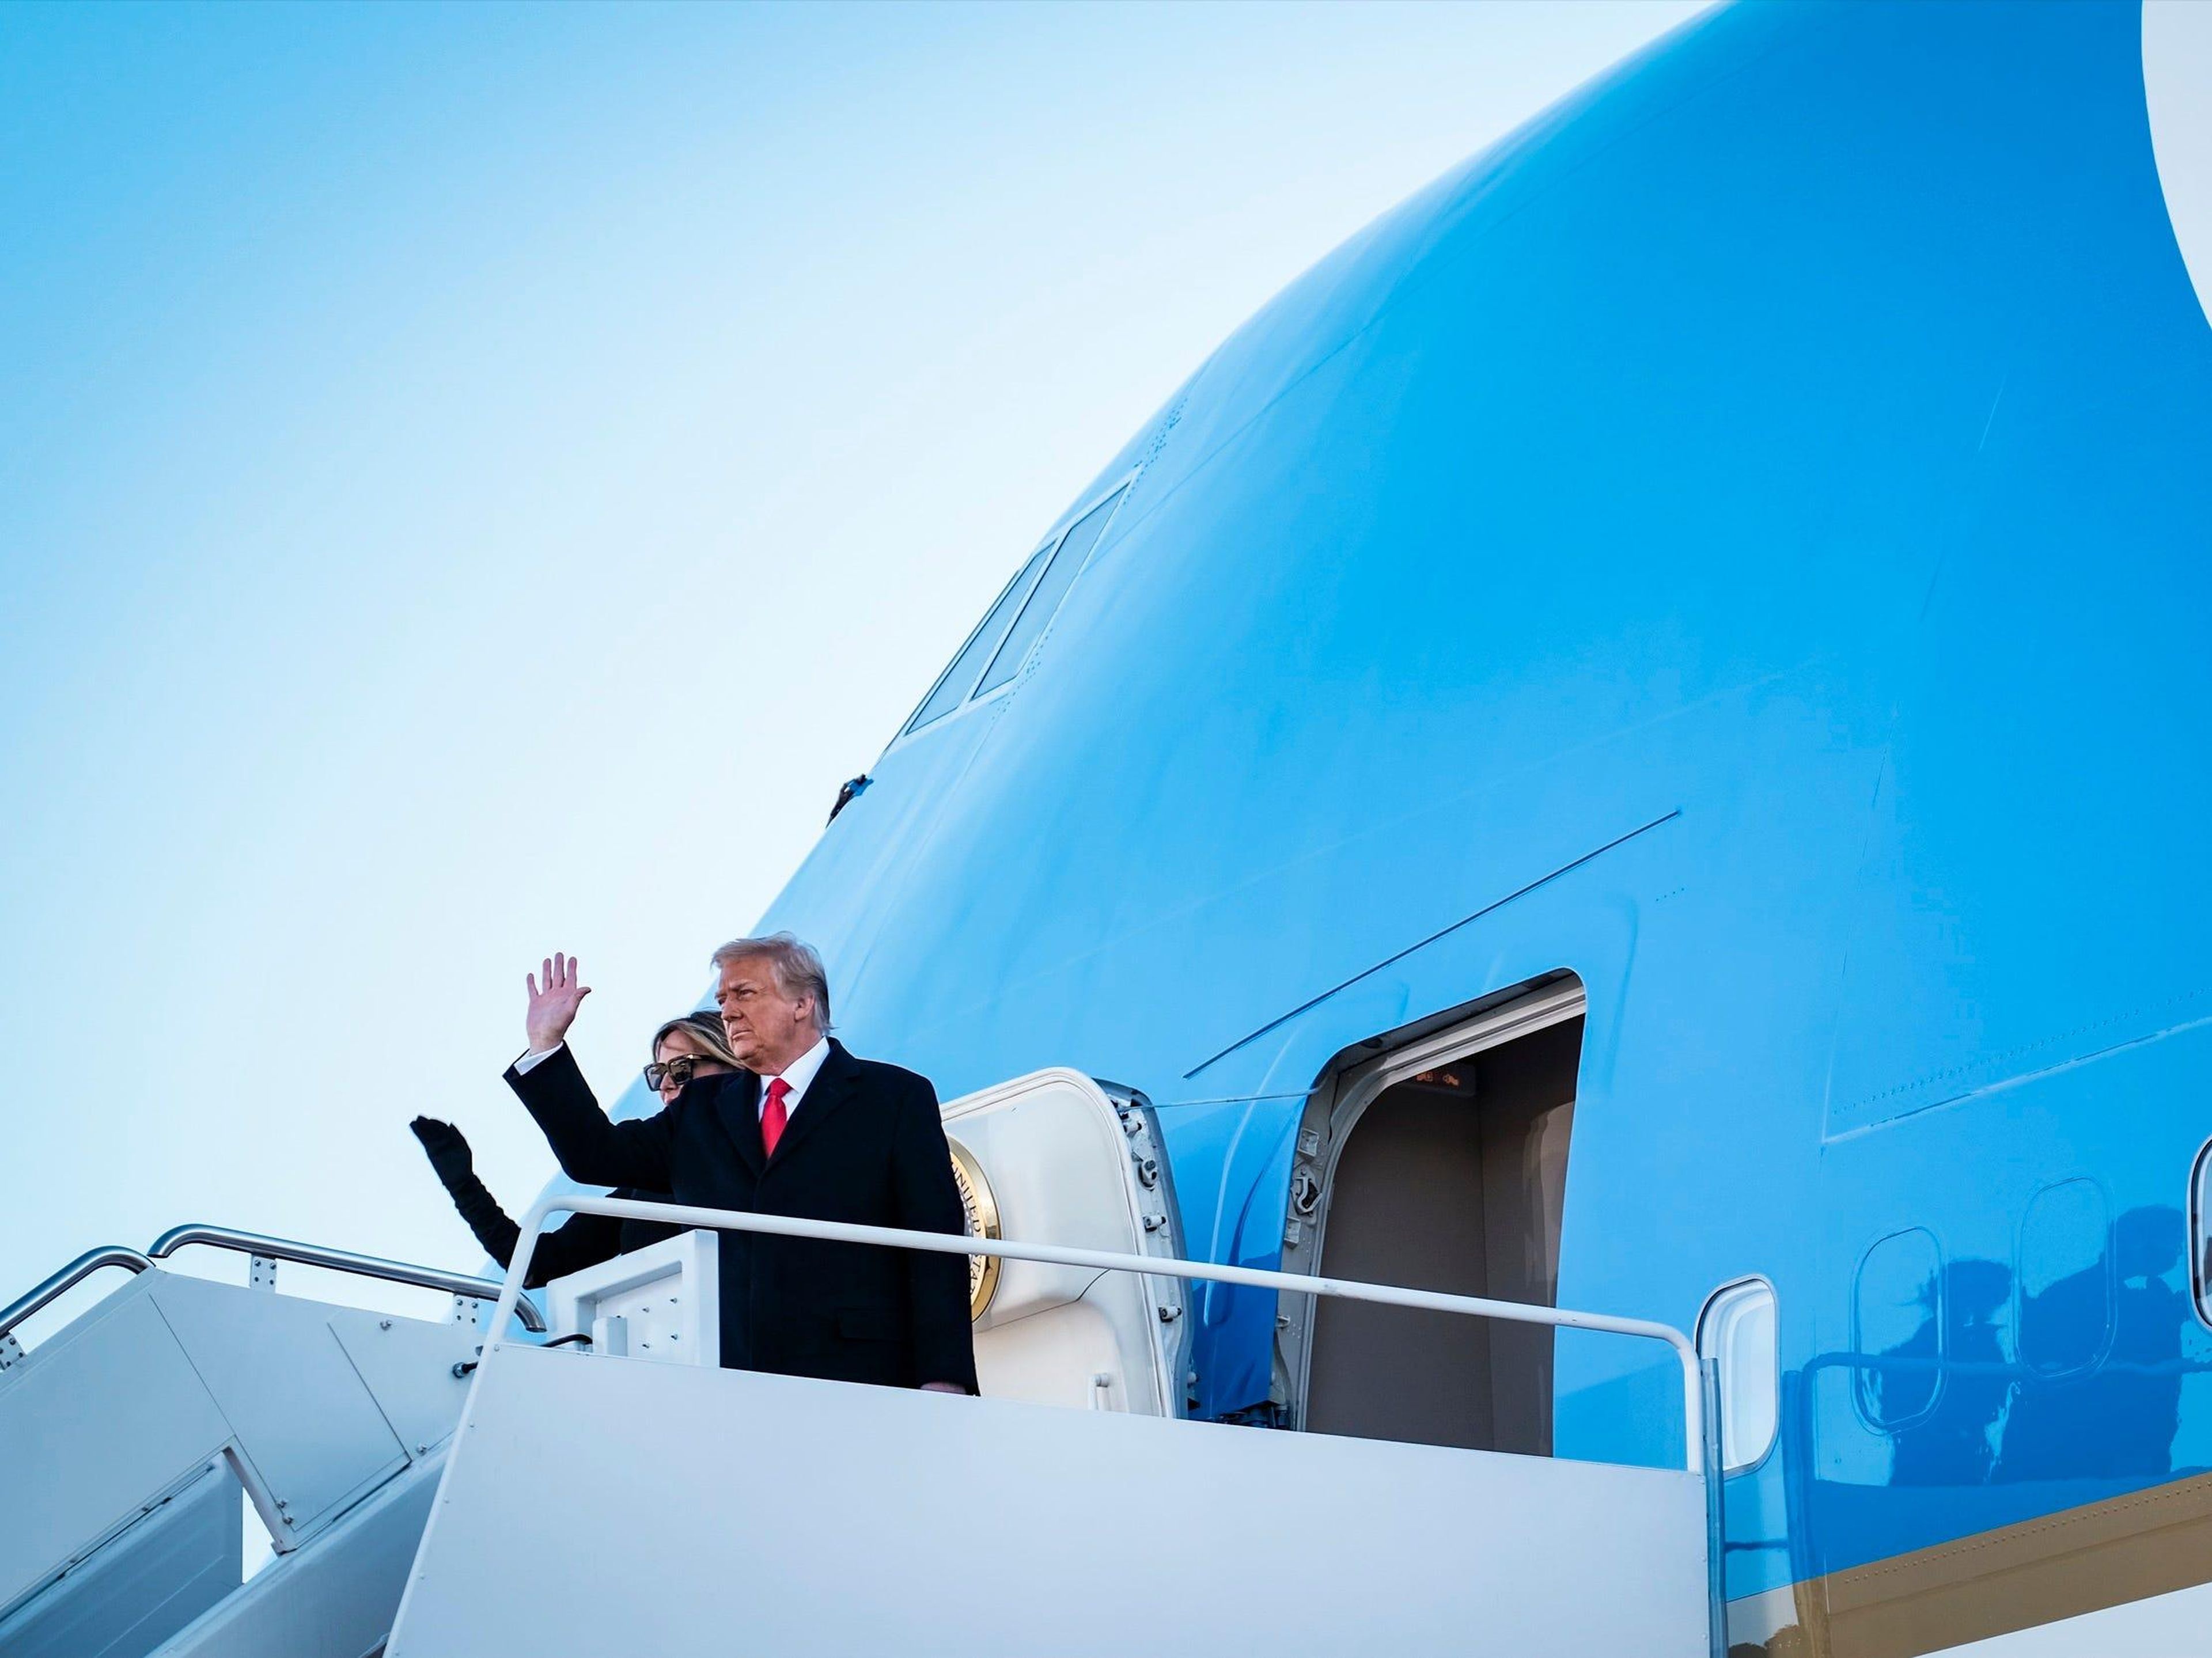 El presidente Donald Trump volando en el Air Force One por última vez.